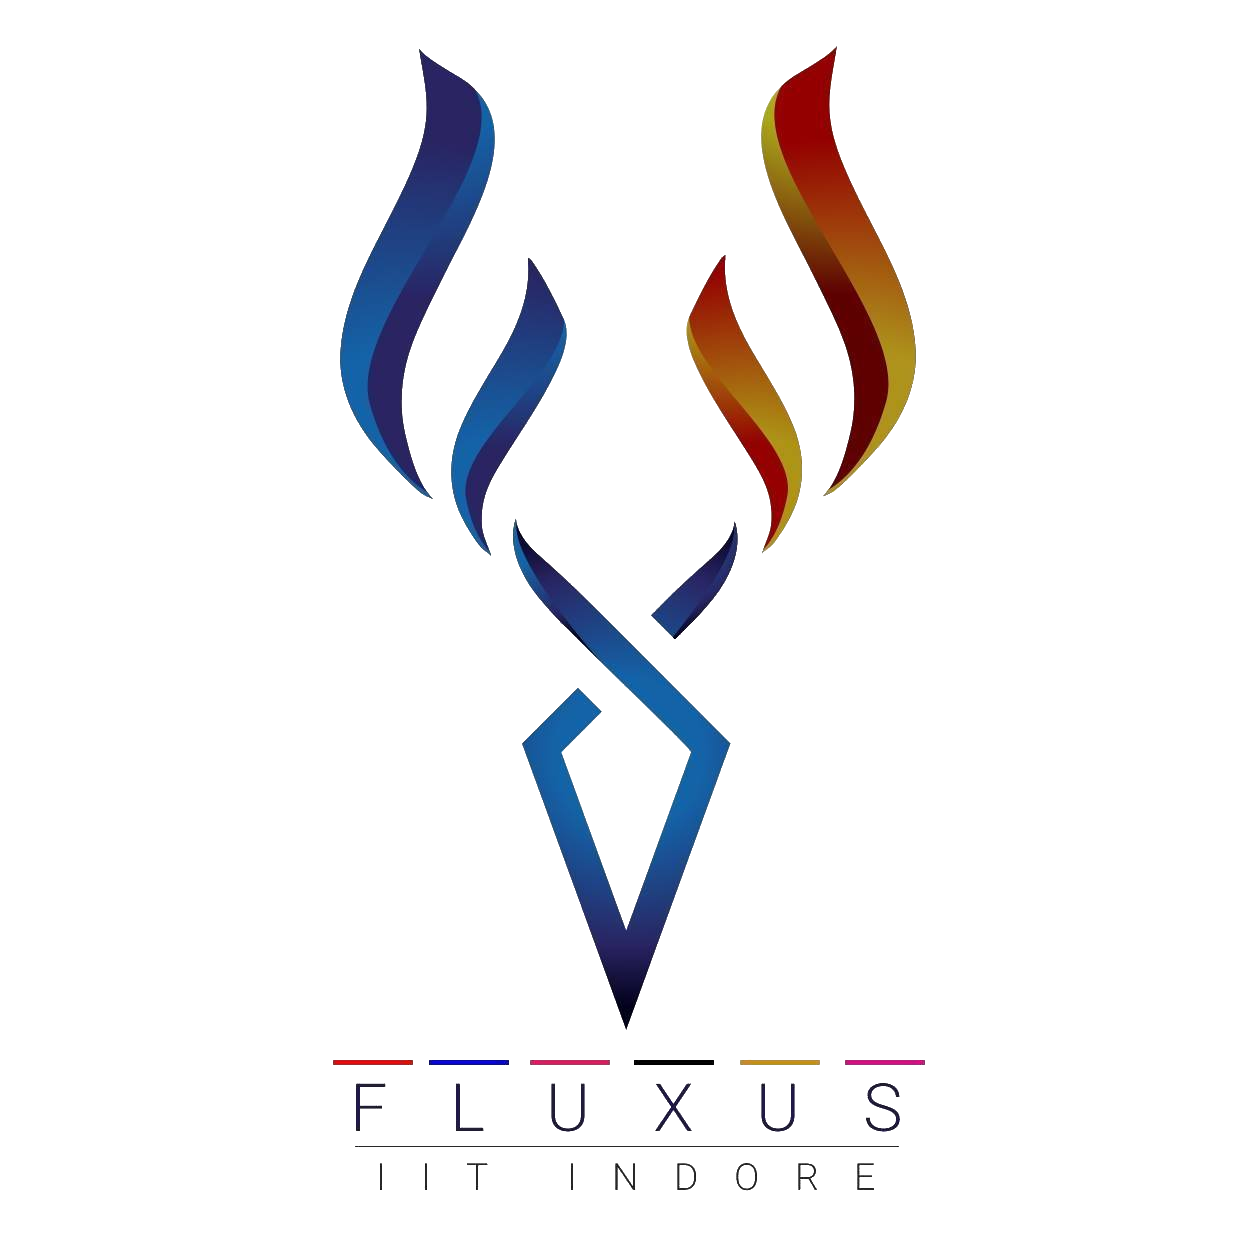 Fluxus IIT Indore 2019